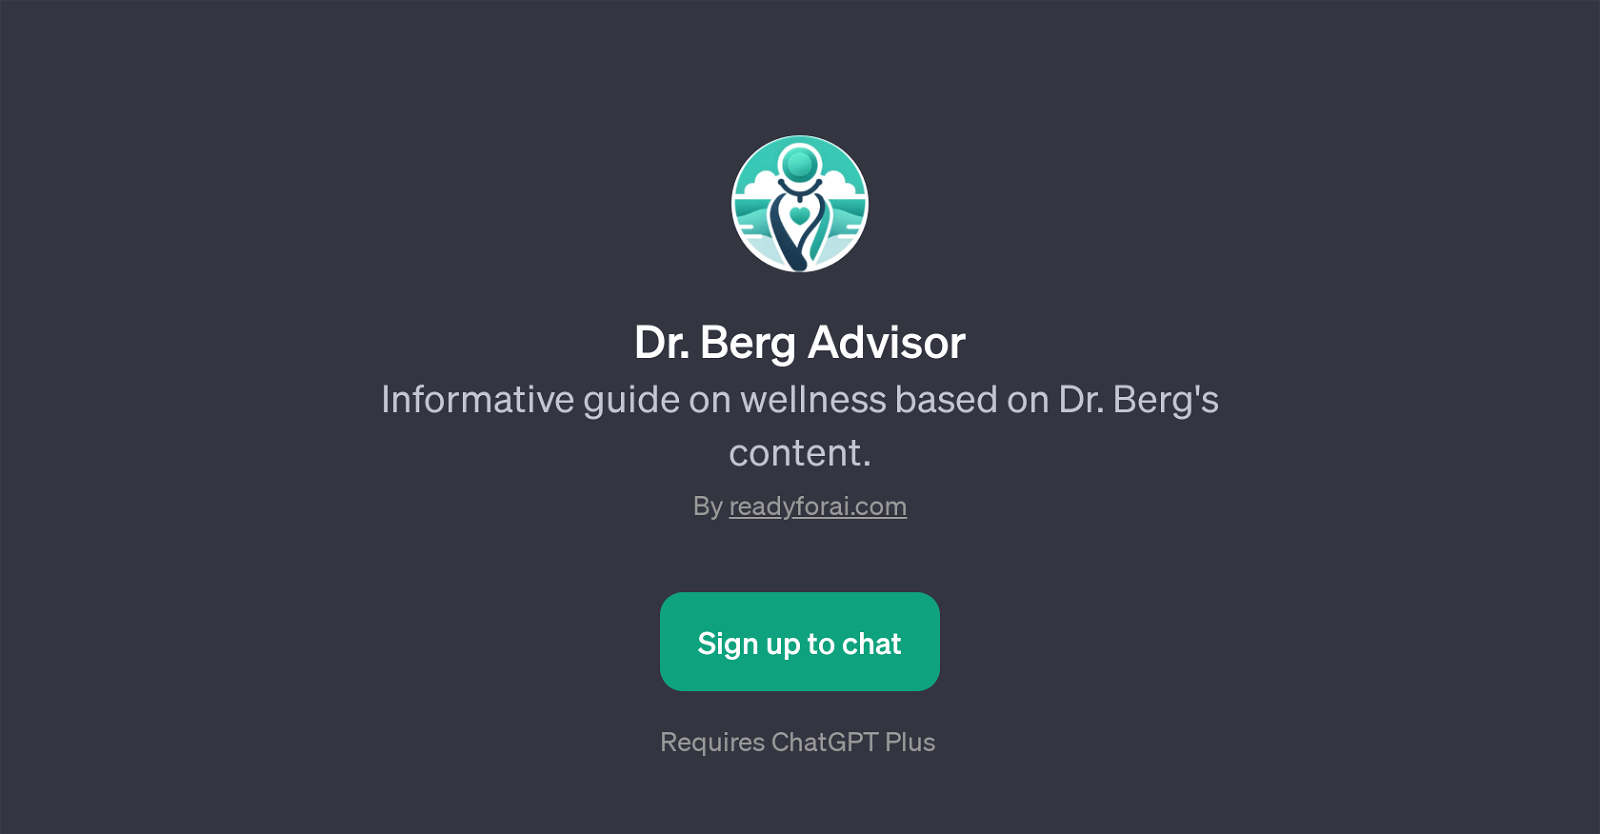 Dr. Berg Advisor website